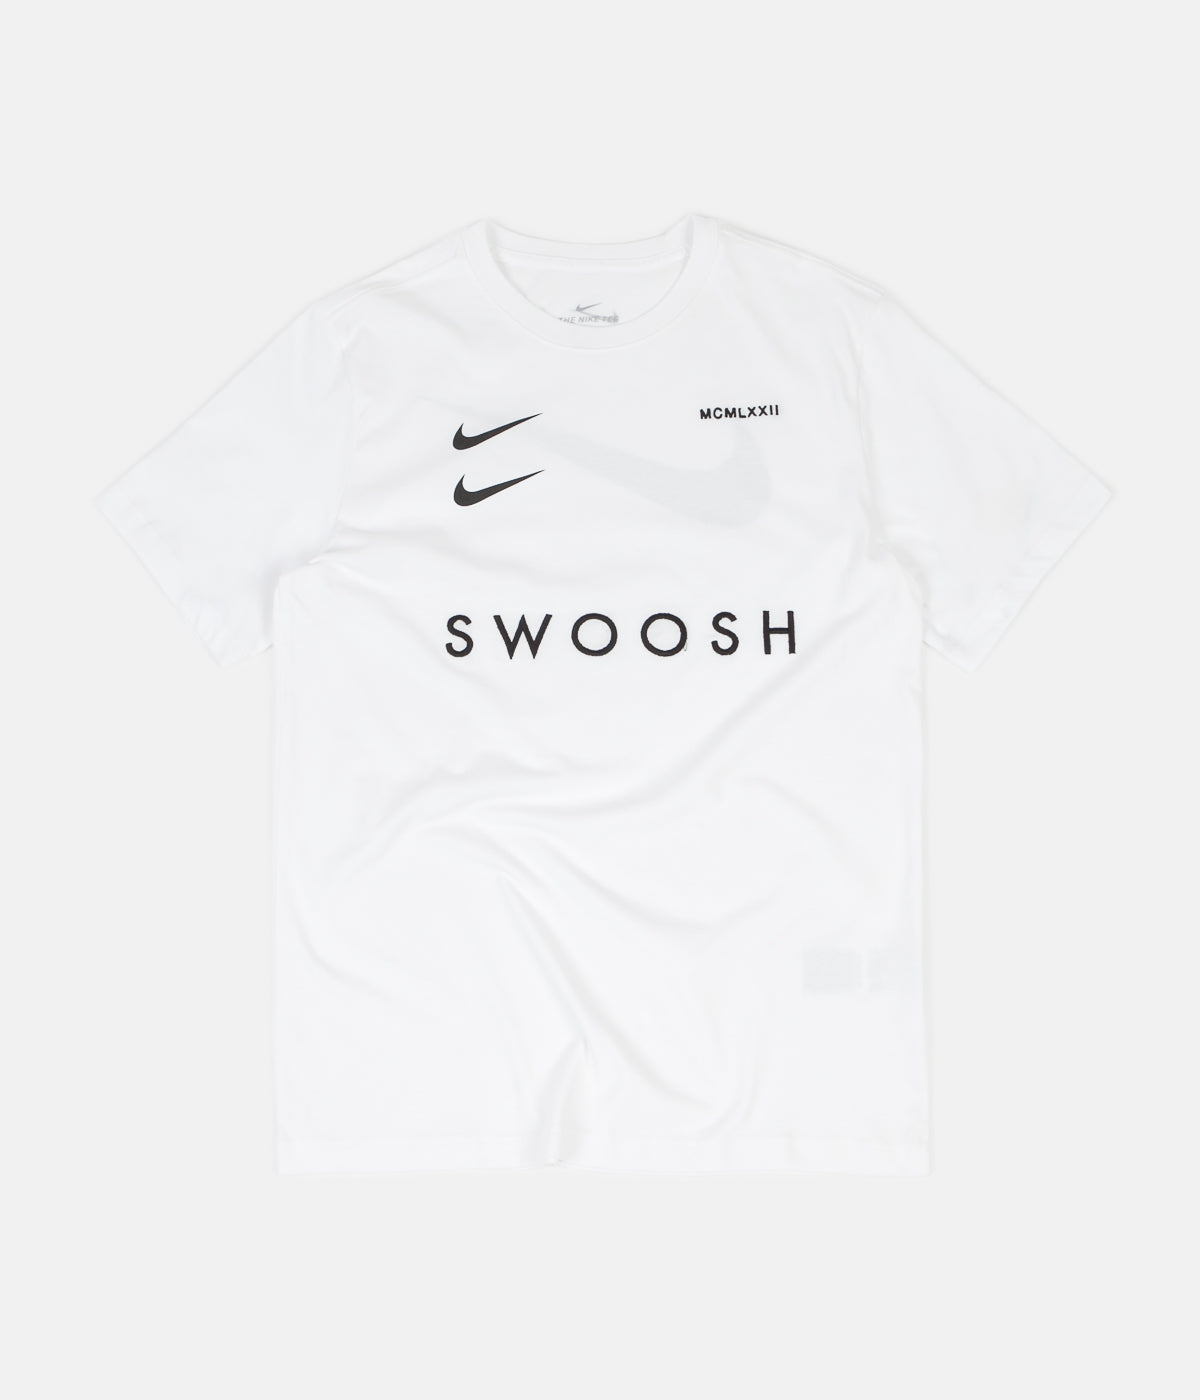 swoosh by nike shirt